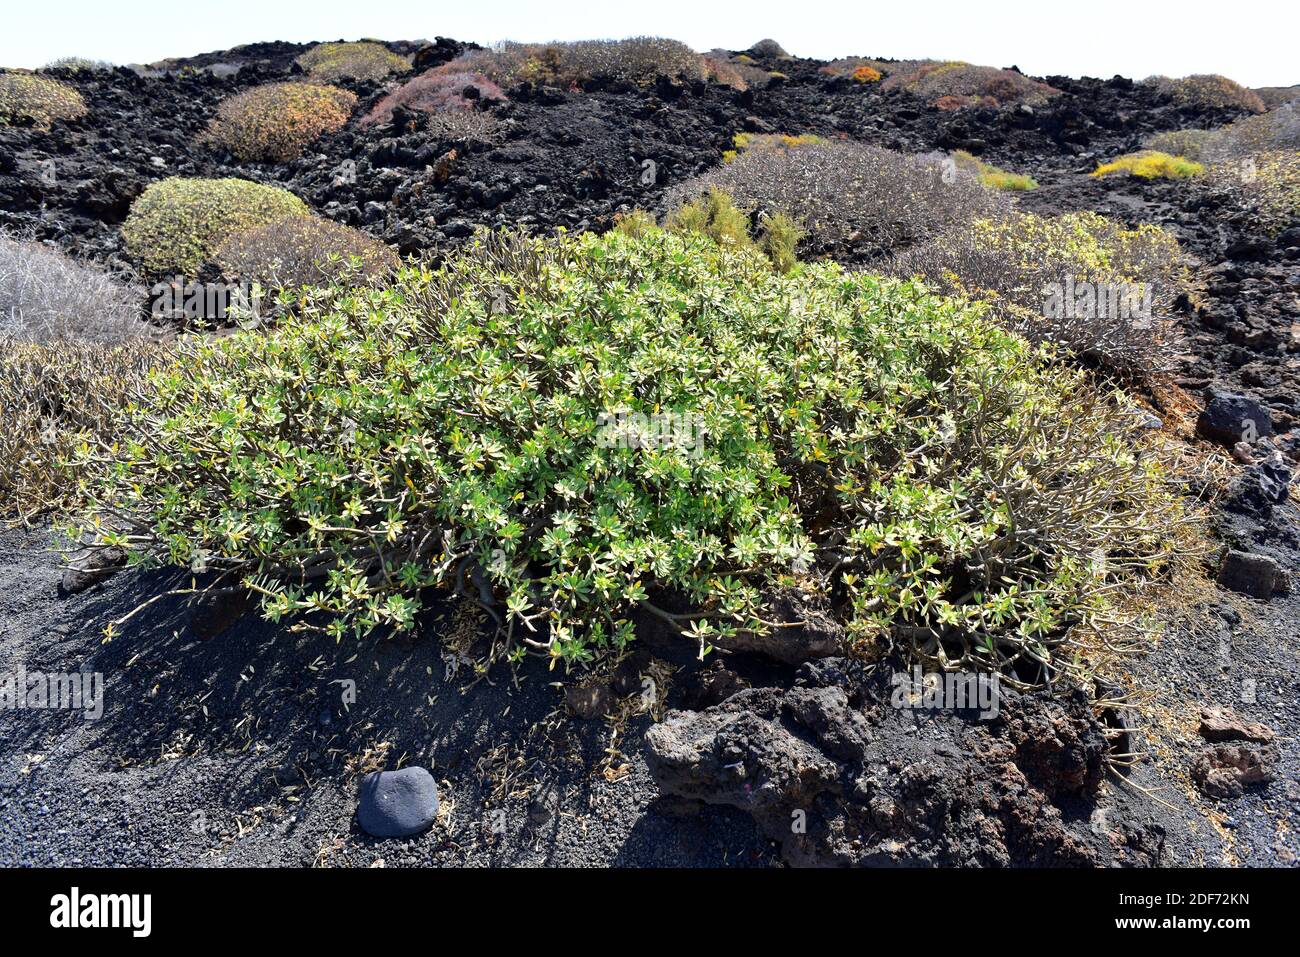 Il balsamo spurge (Euphorbia balsamifera) è un arbusto originario delle Isole Canarie, dell'Africa settentrionale e dell'Arabia saudita. Questa foto è stata scattata a Lanzarote Foto Stock